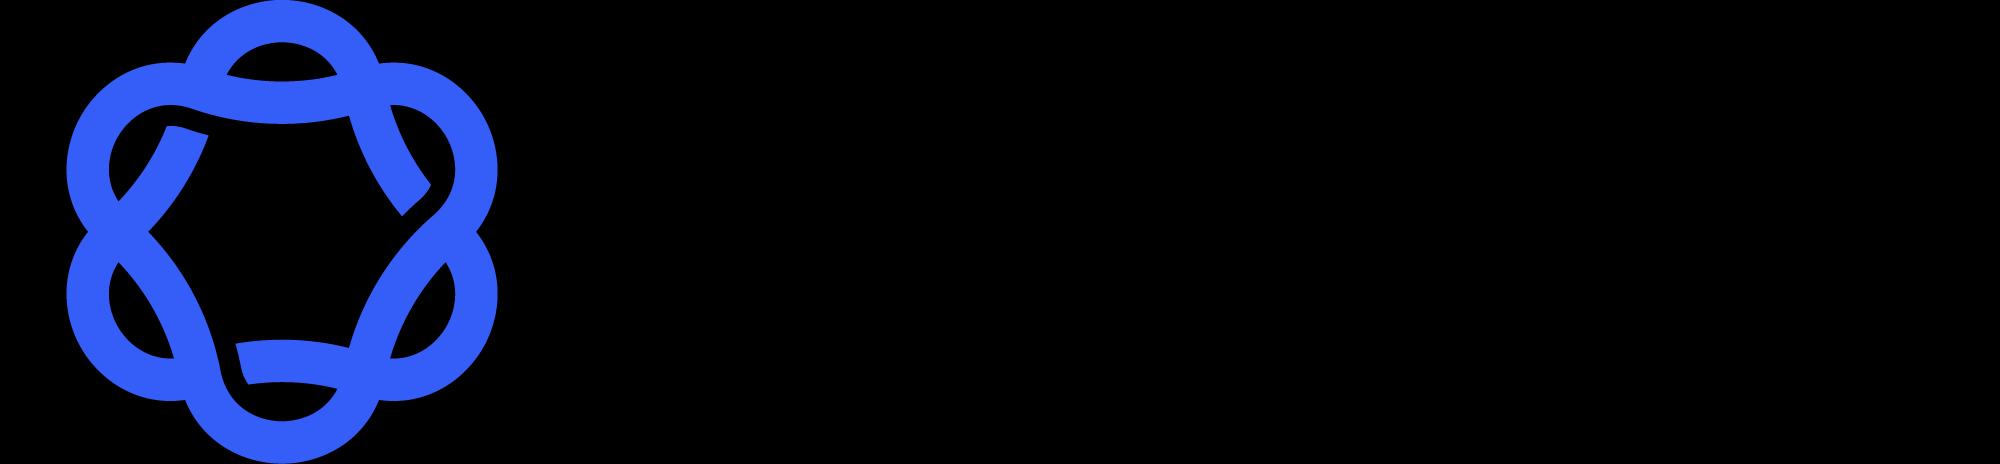 Medallion_logo